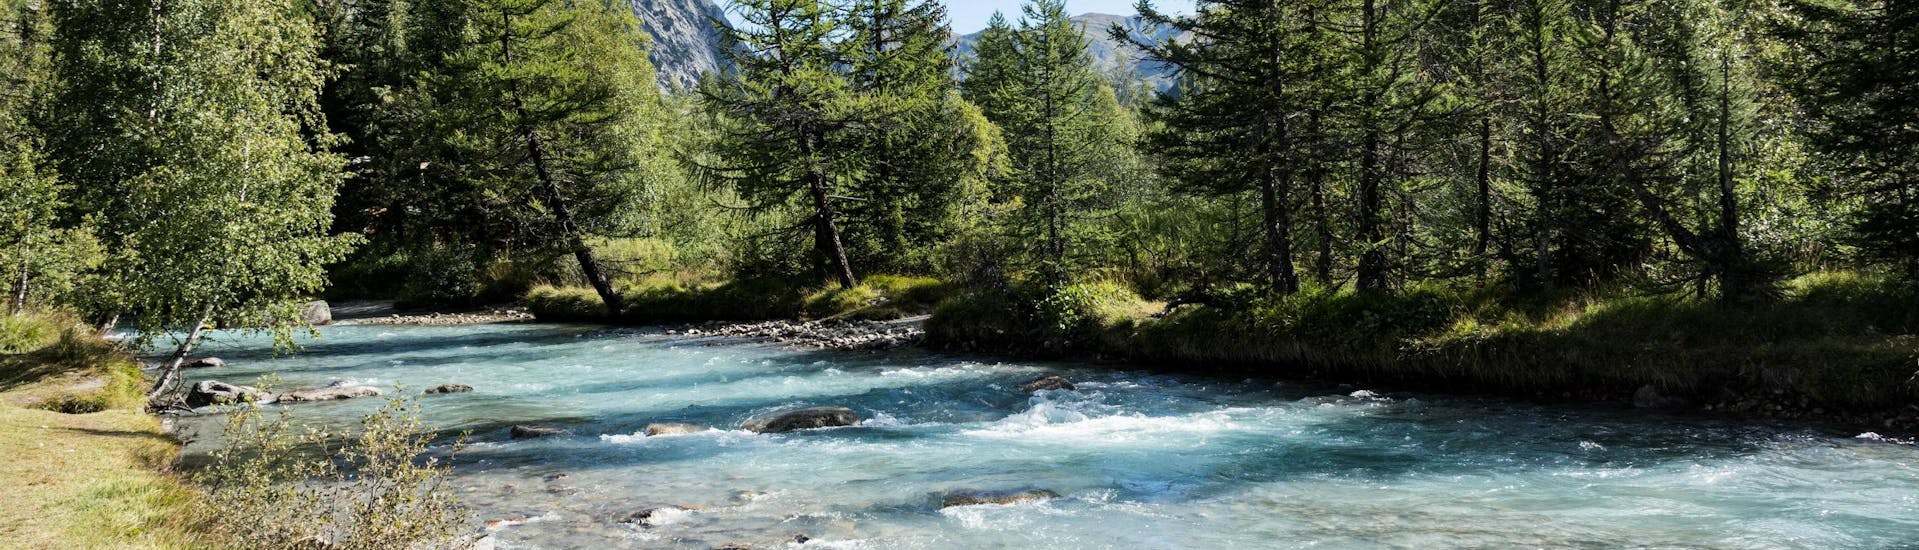 Un'immagine del pittoresco paesaggio montano che si può ammirare durante il rafting in Valle d'Aosta.